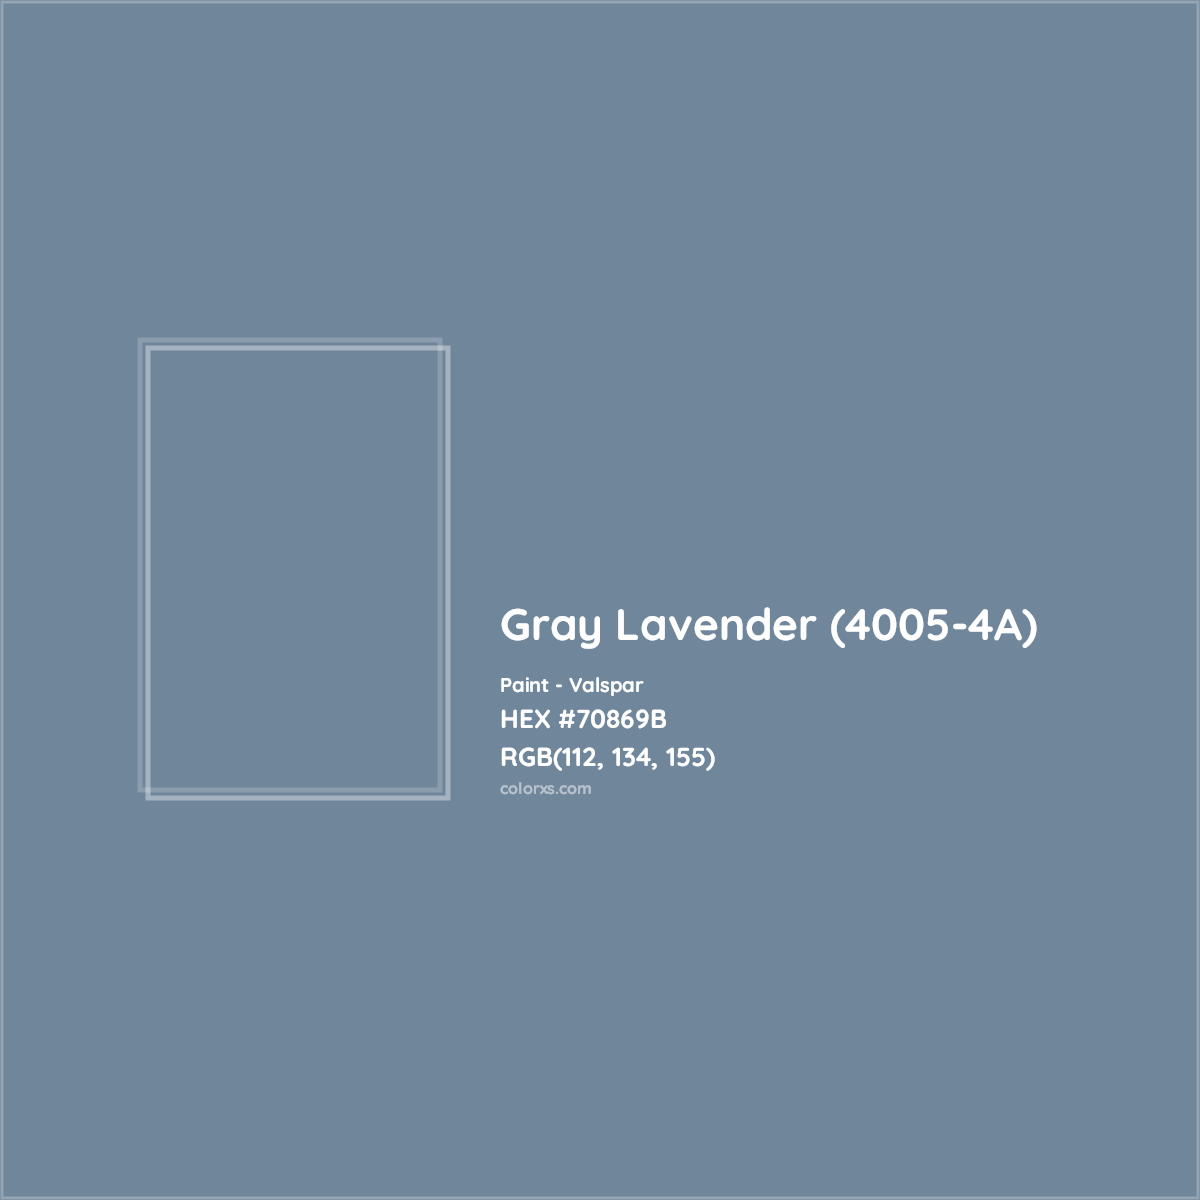 HEX #70869B Gray Lavender (4005-4A) Paint Valspar - Color Code